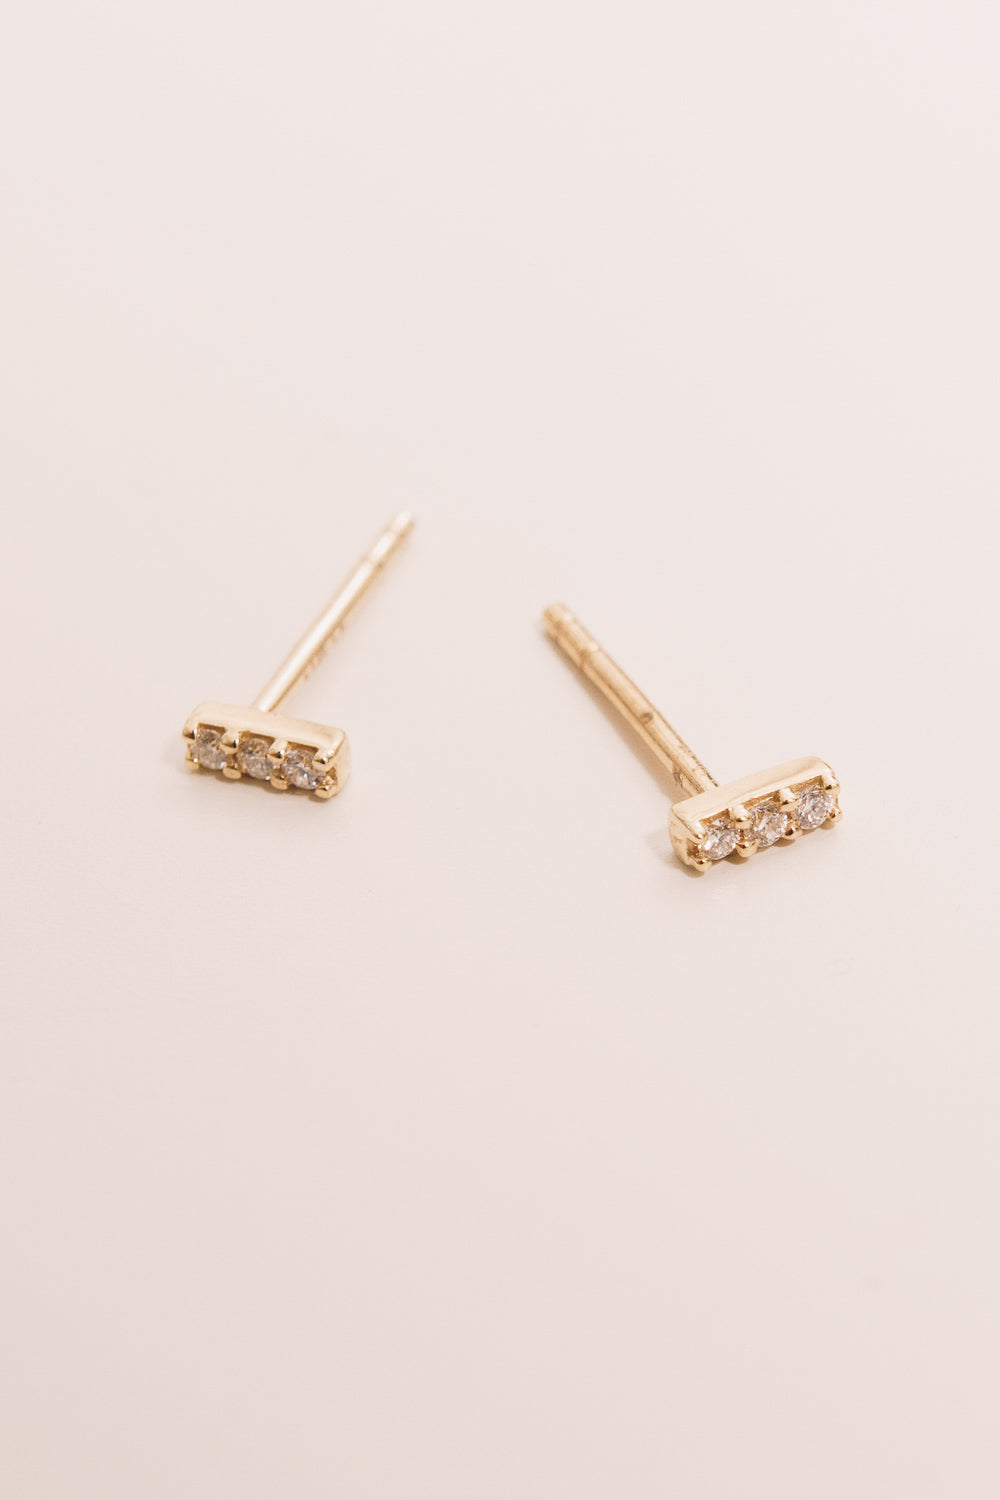 14k gold diamond bar earrings side view